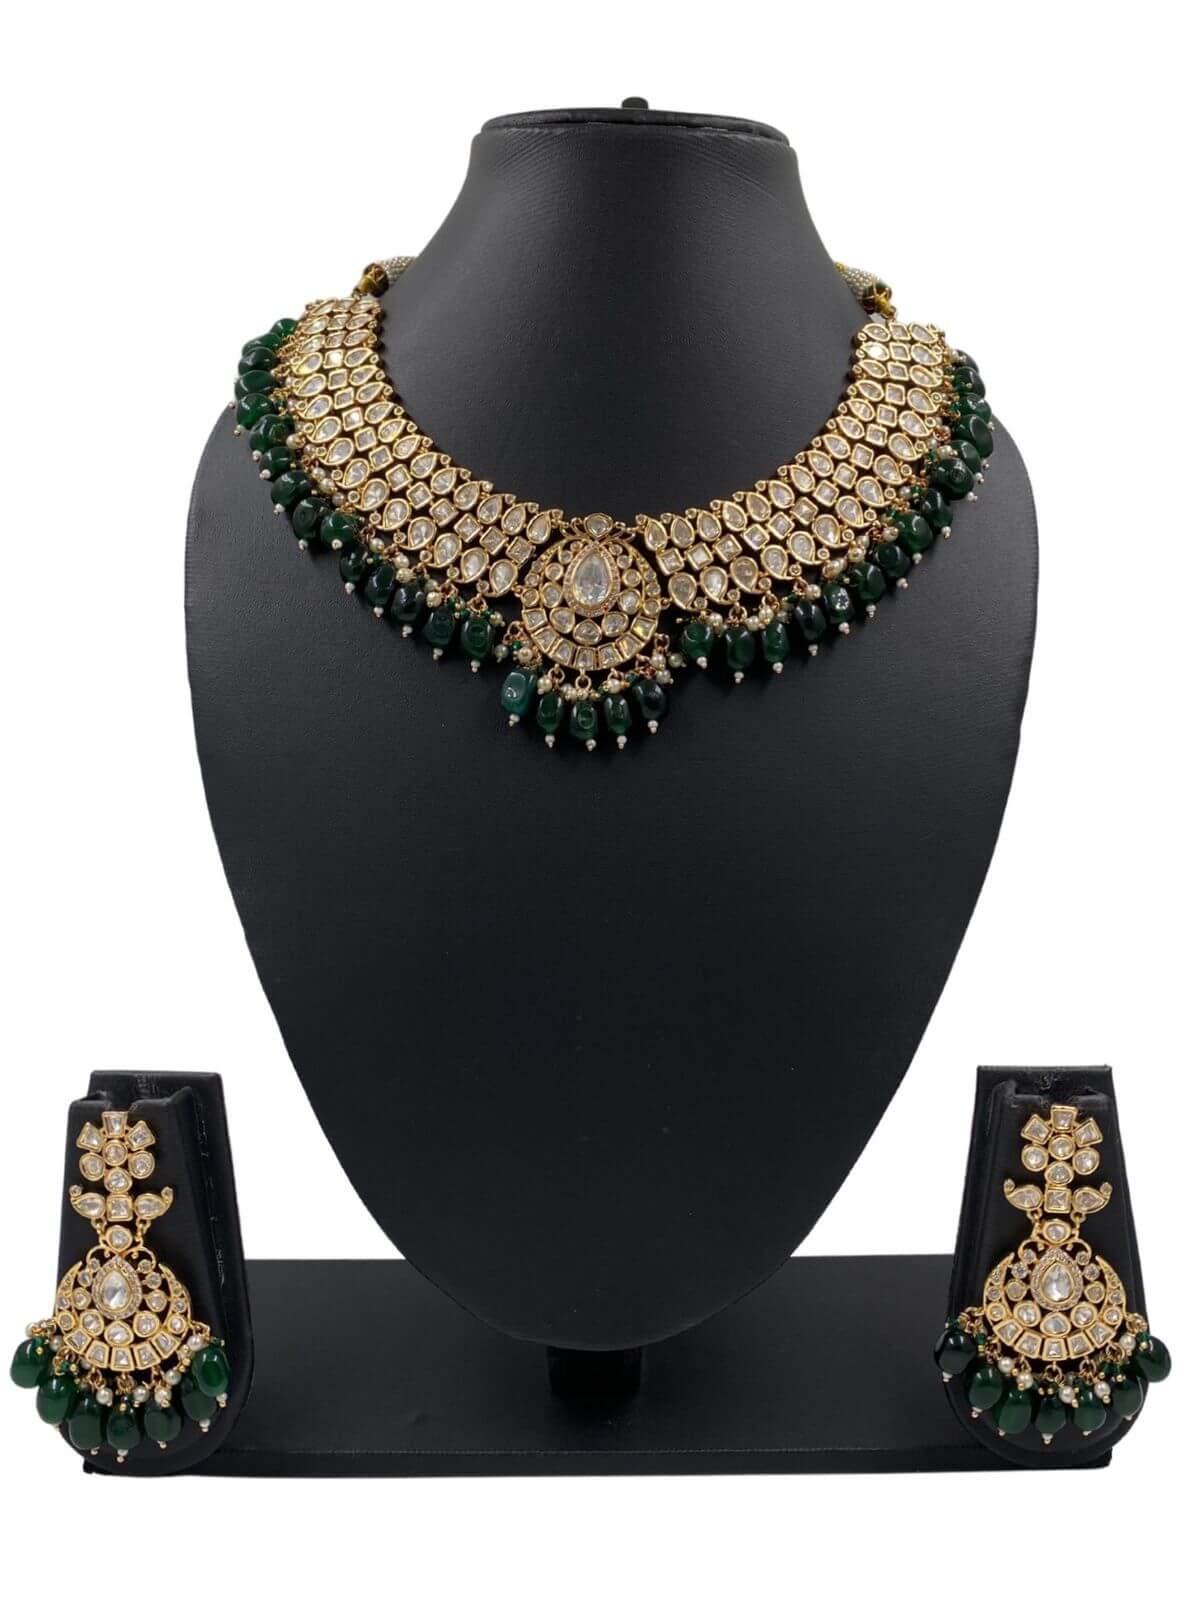 Nayantara Unique Wedding Polki Jewellery Necklace Set By Gehna Shop